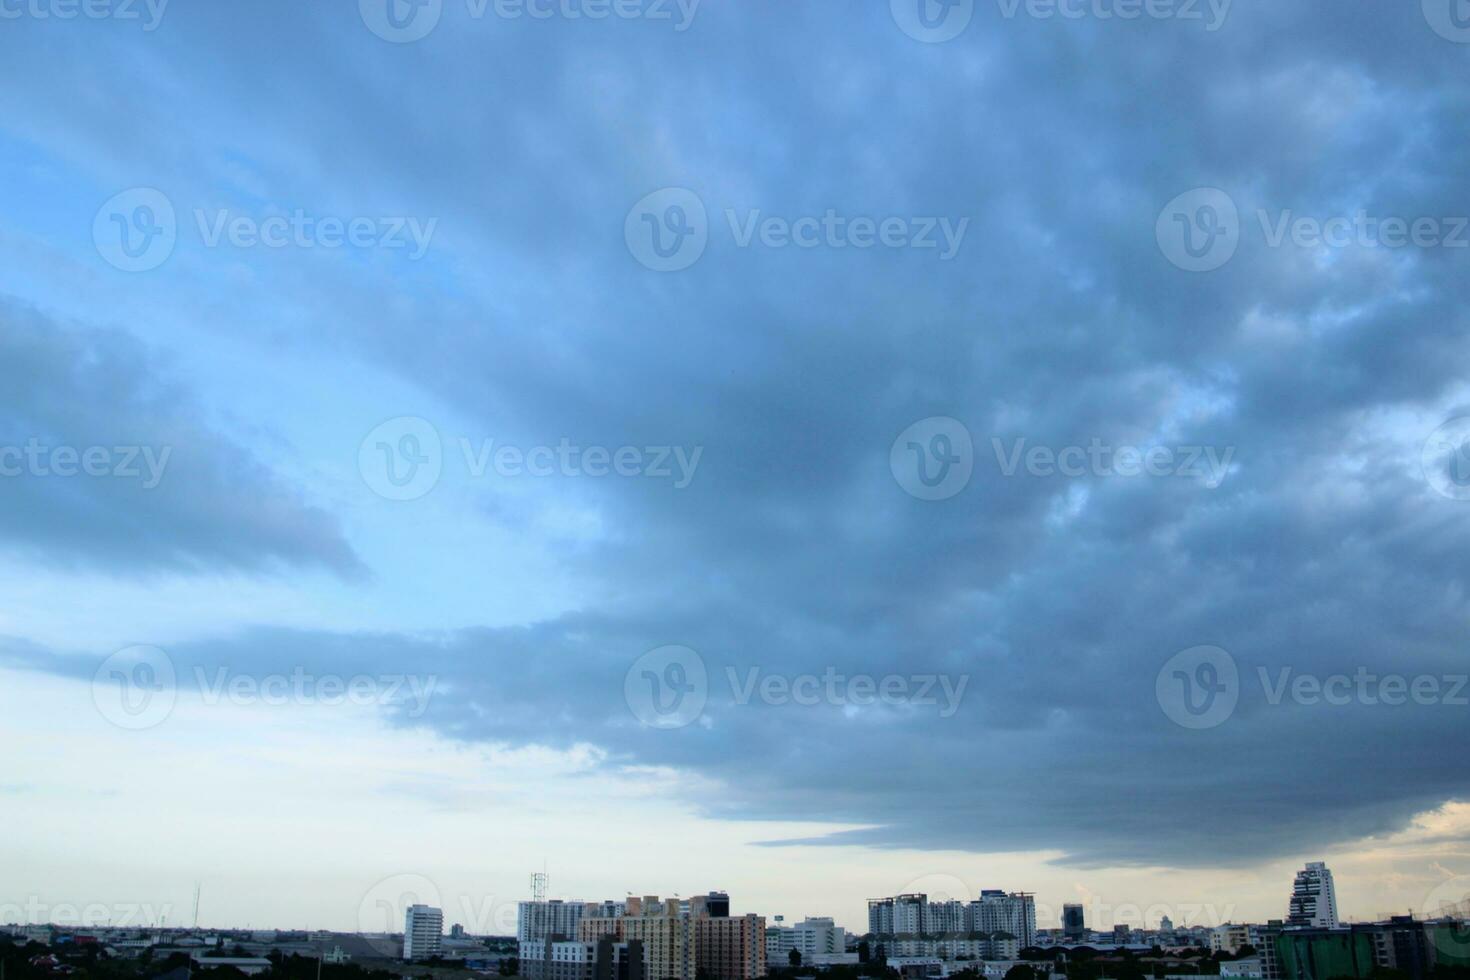 donker blauw wolk met wit licht zonsondergang lucht achtergrond en stad licht middernacht avond tijd foto